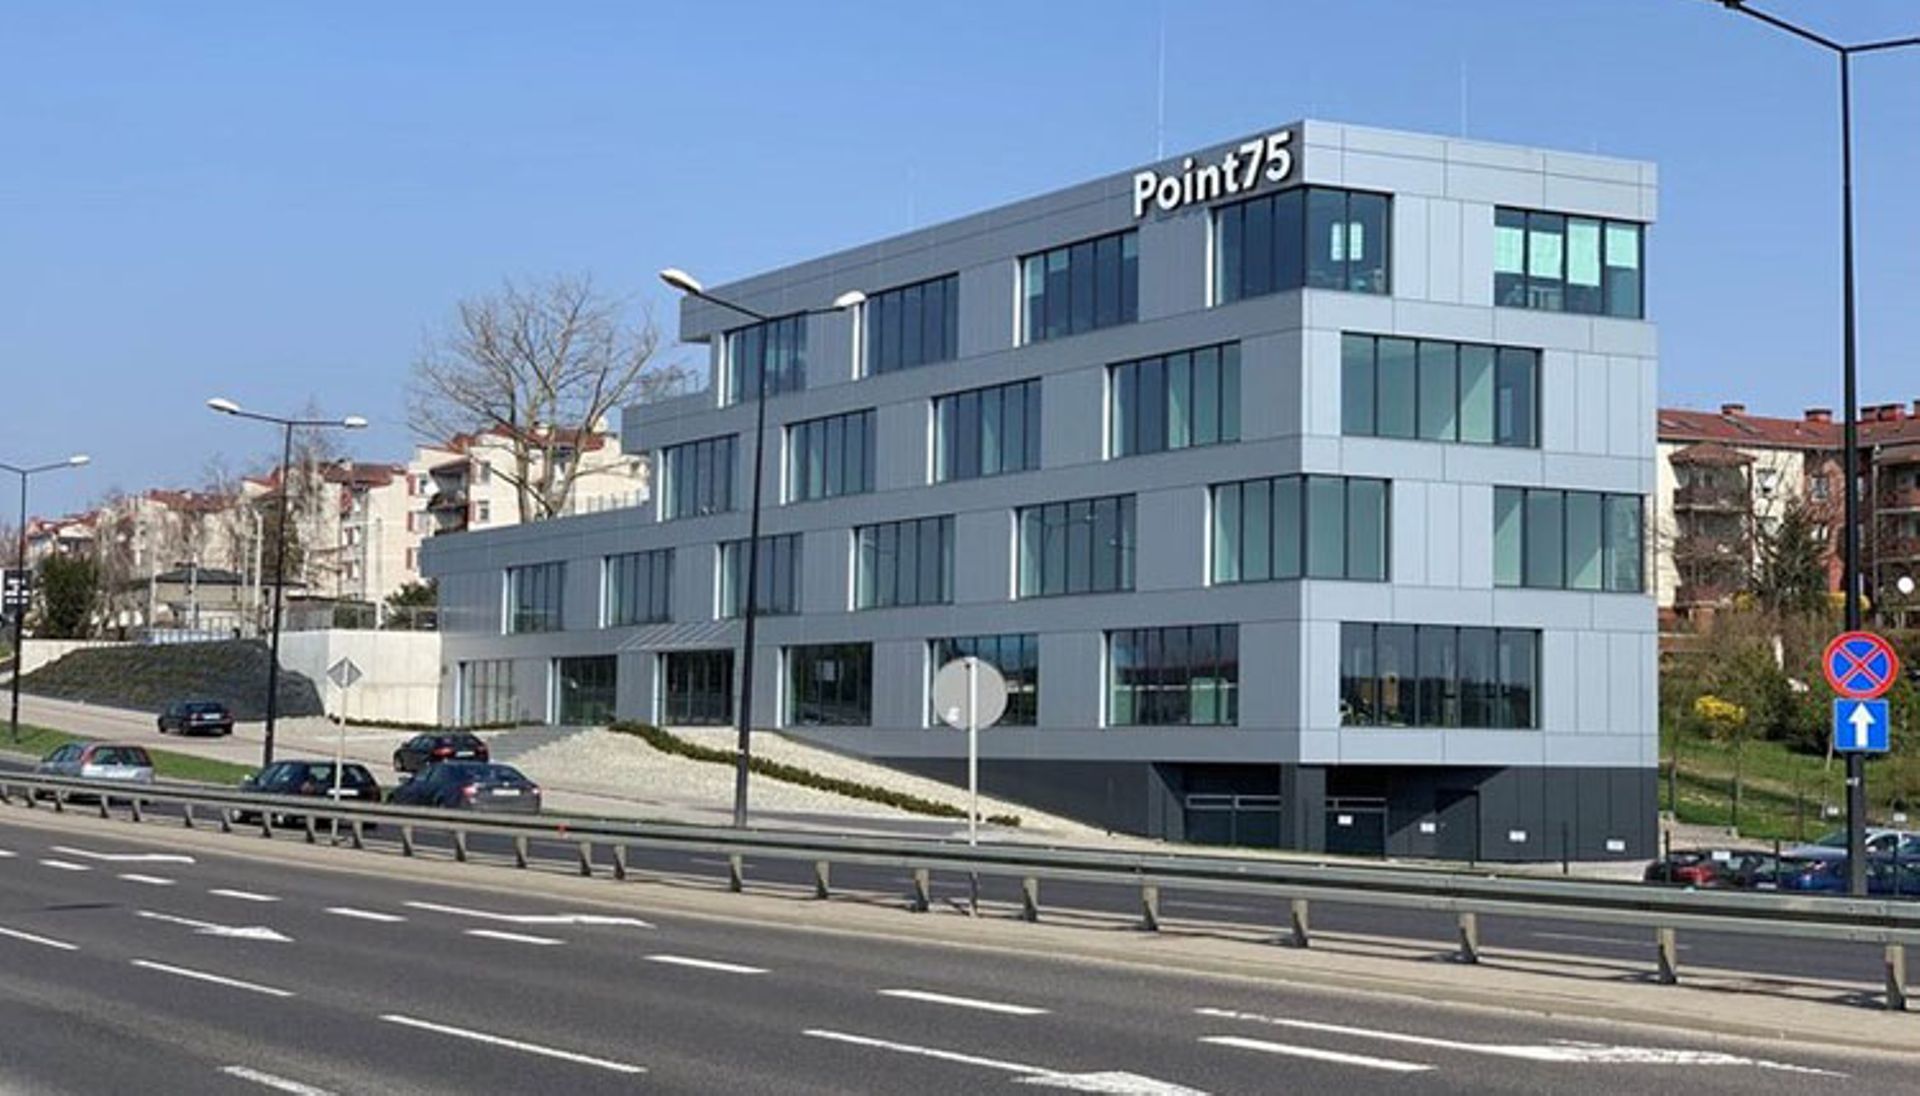  Strabag wynajął ponad 1000 mkw. powierzchni biurowej w budynku Point 75 w Lublinie